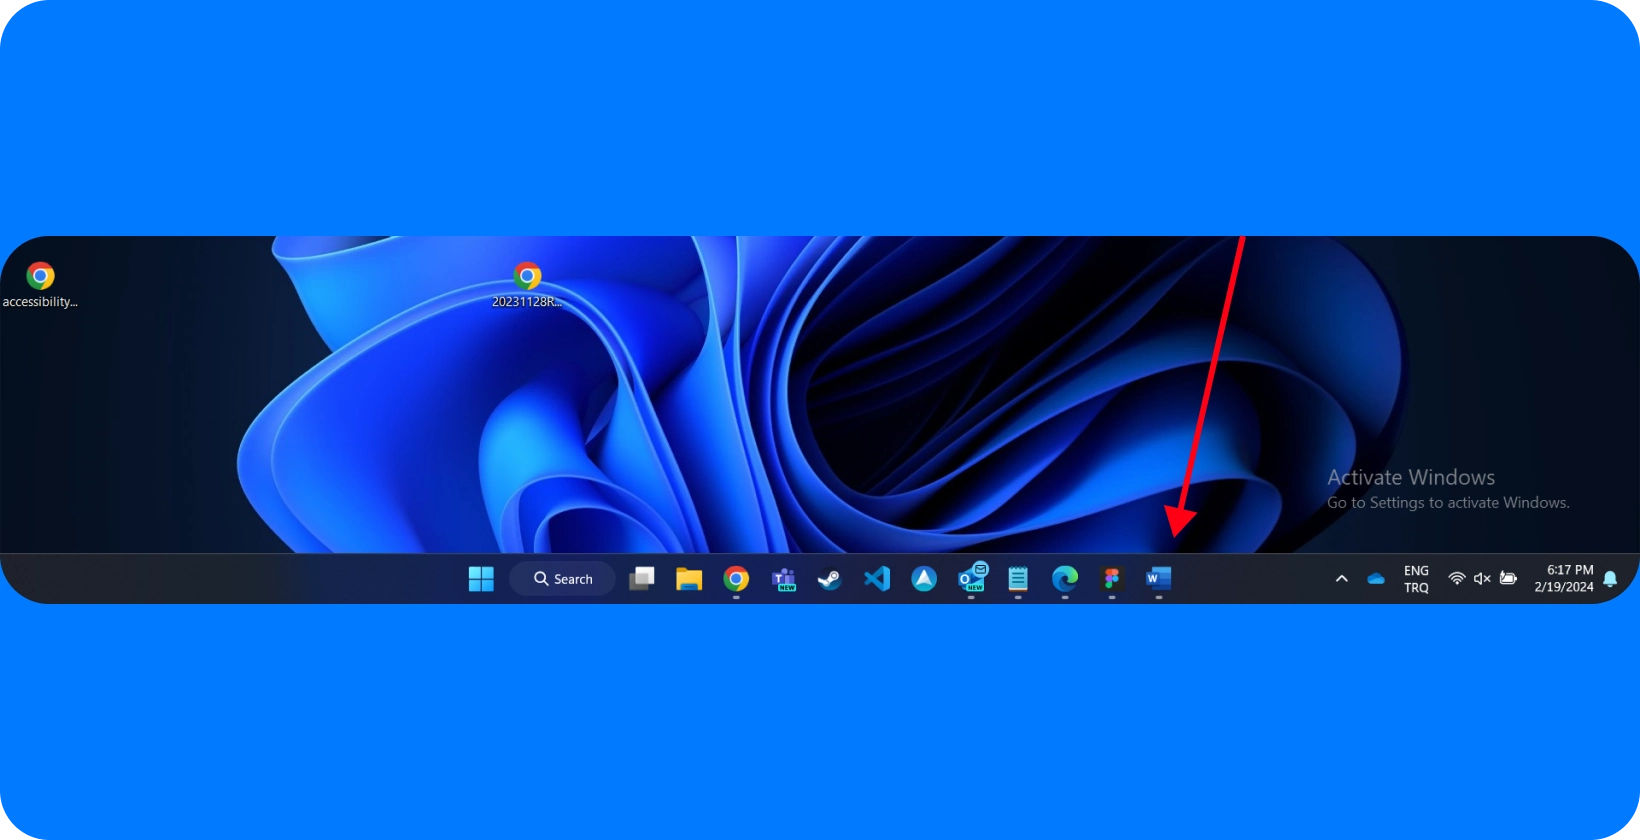 डेस्कटॉप स्क्रीन हाइलाइट किए गए Microsoft Word आइकन के साथ Windows इंटरफ़ेस दिखा रही है, जो श्रुतलेख सुविधाओं पर ध्यान केंद्रित करने का संकेत देती है।